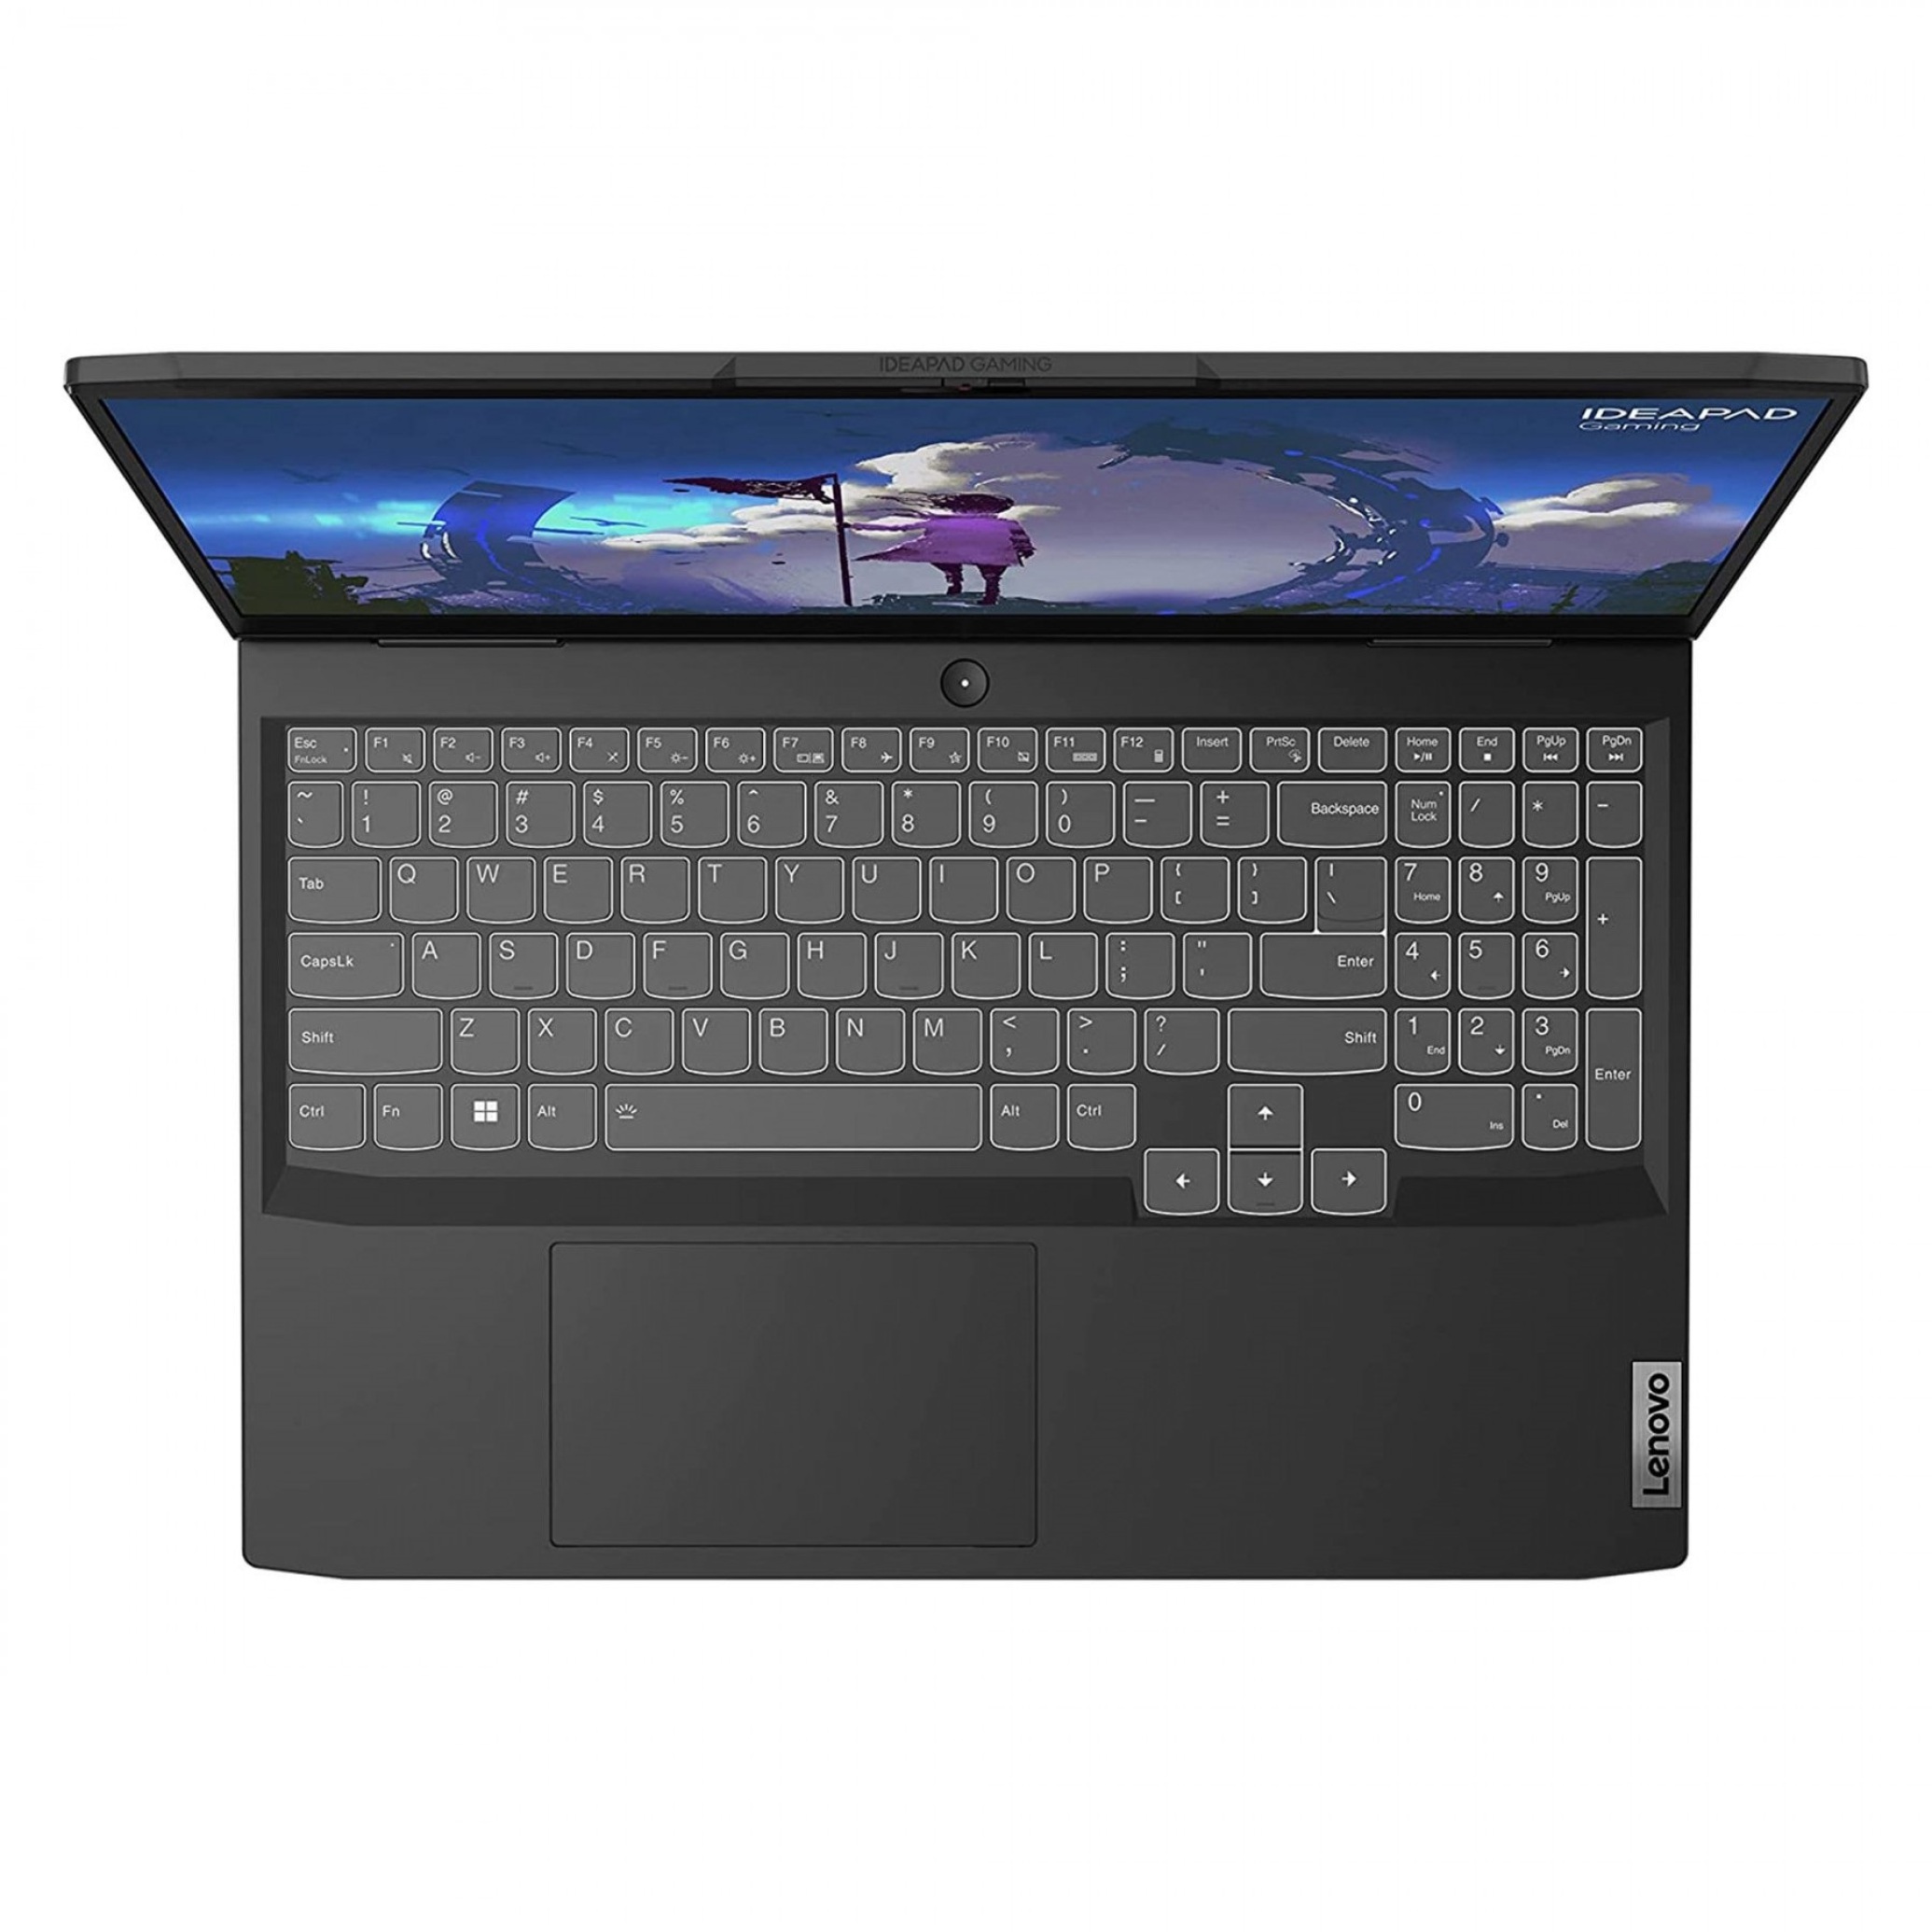  لپ تاپ لنوو IdeaPad Gaming 3 i5 12500H | لاکچری لپ تاپ 